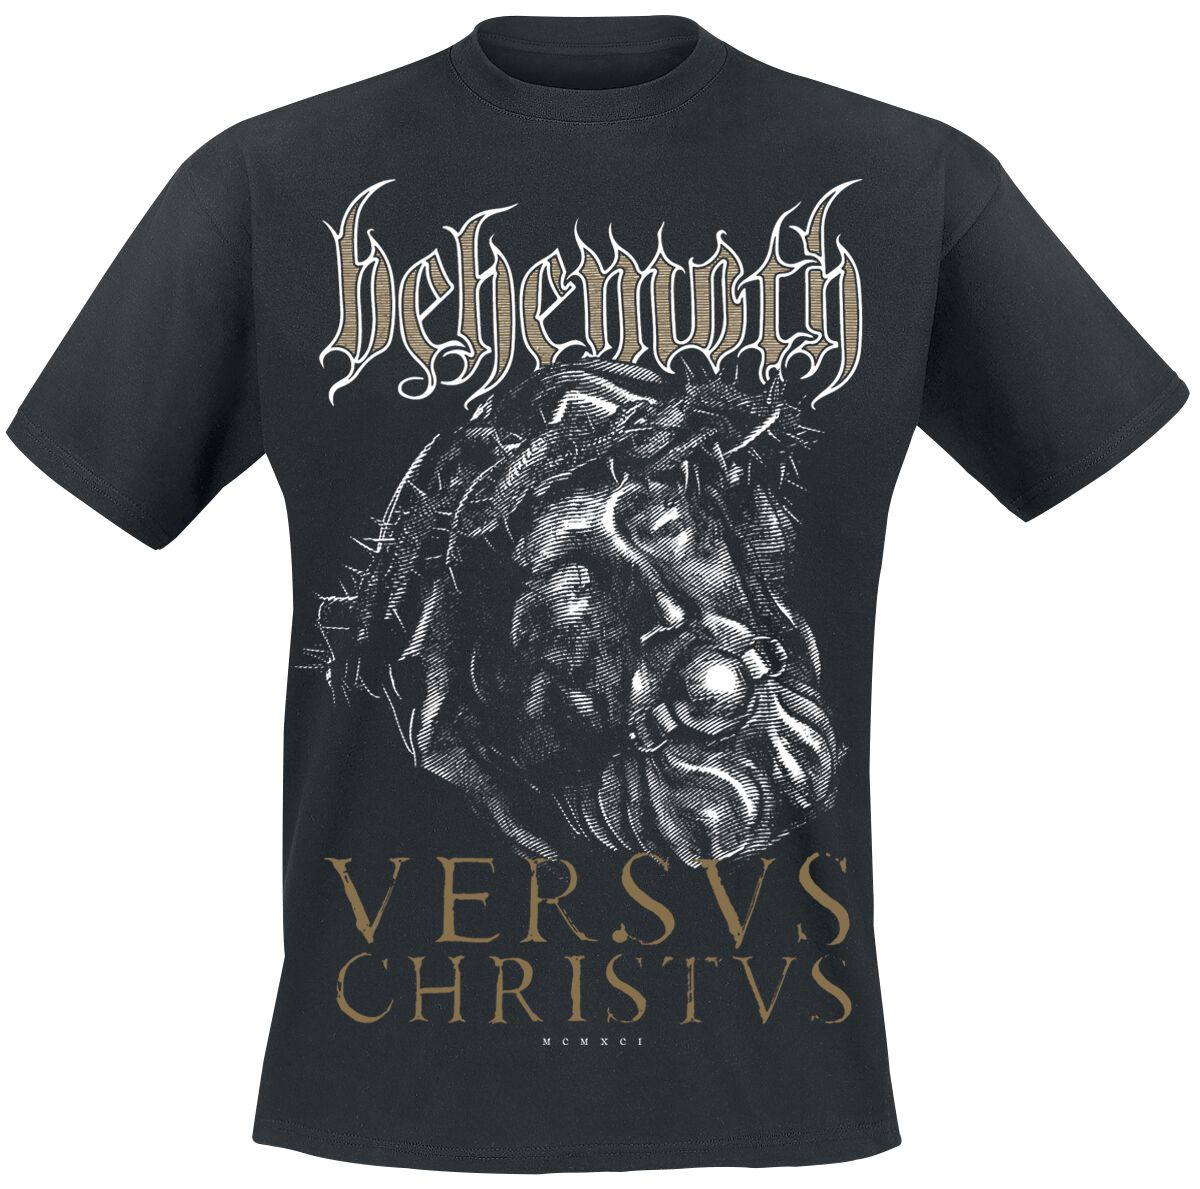 Behemoth T-Shirt - Versvs Christvs - S bis 4XL - für Männer - Größe M - schwarz  - Lizenziertes Merchandise!